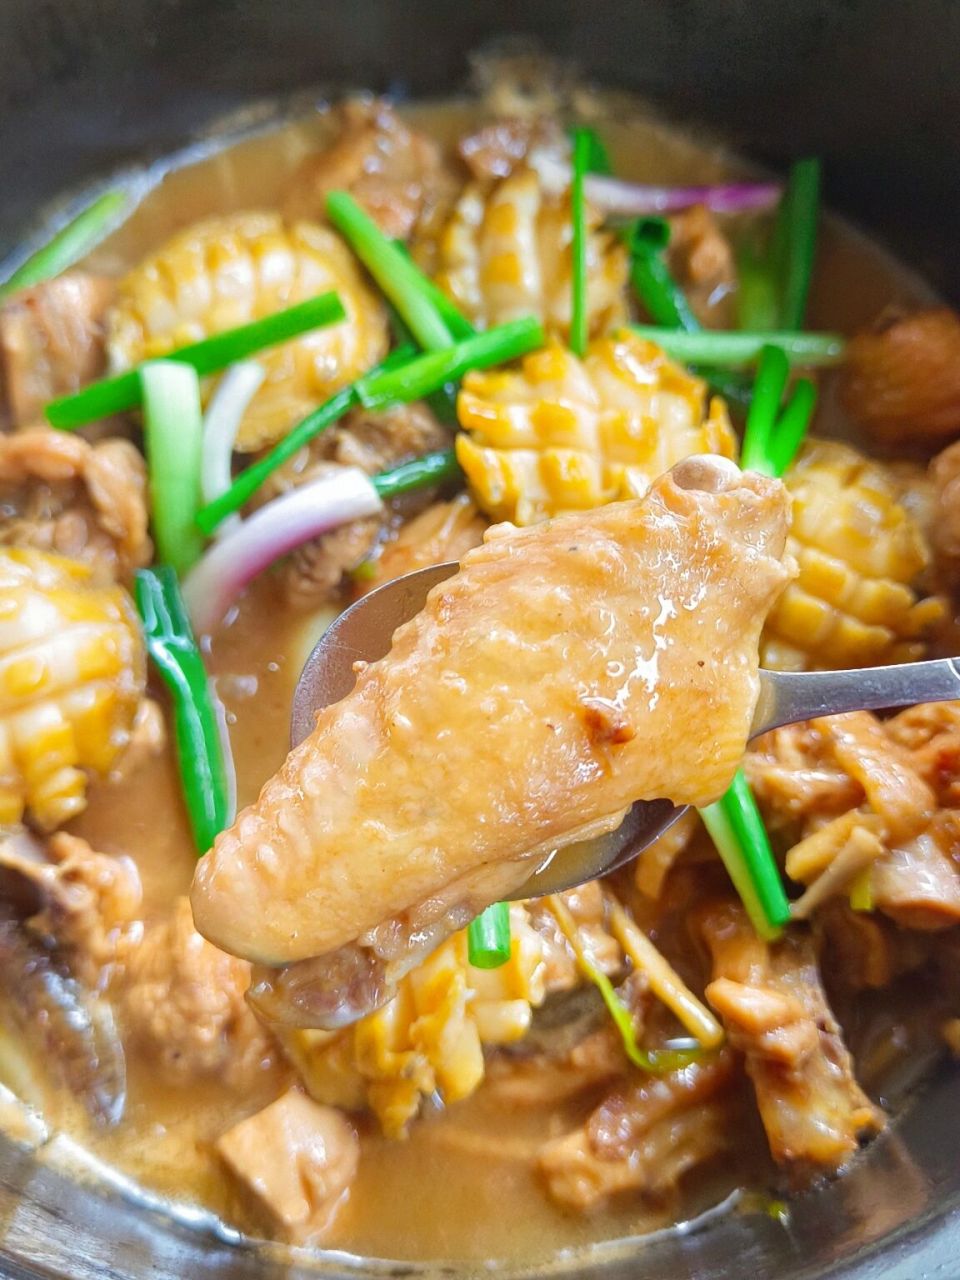 粤菜鲍鱼焖鸡图片